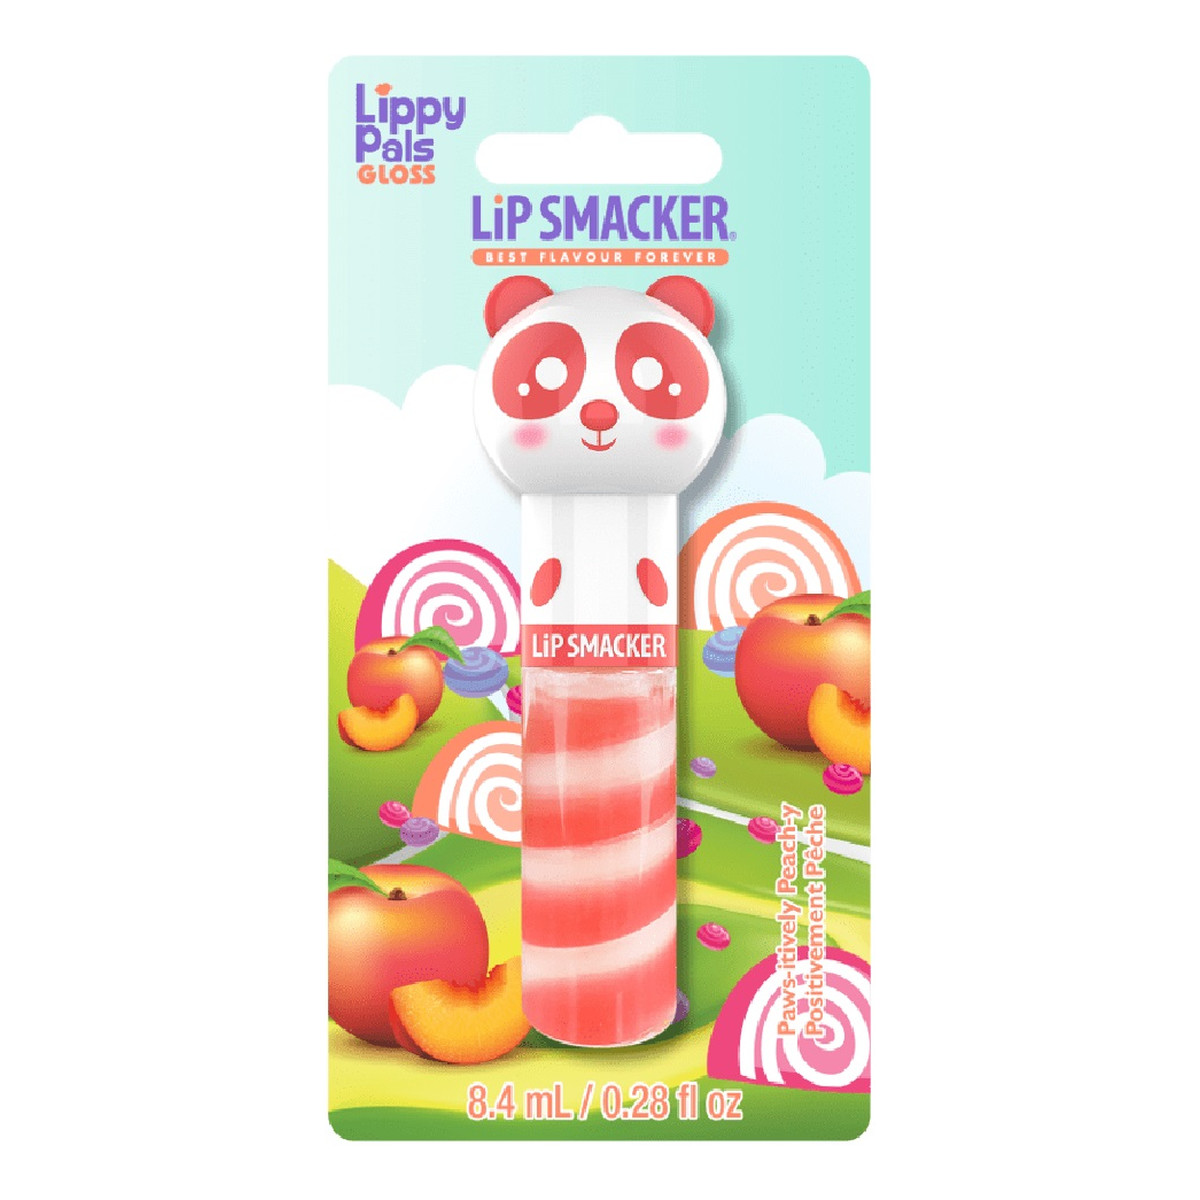 Lip Smacker Lippy pals gloss błyszczyk do ust peachy 8,4 ml